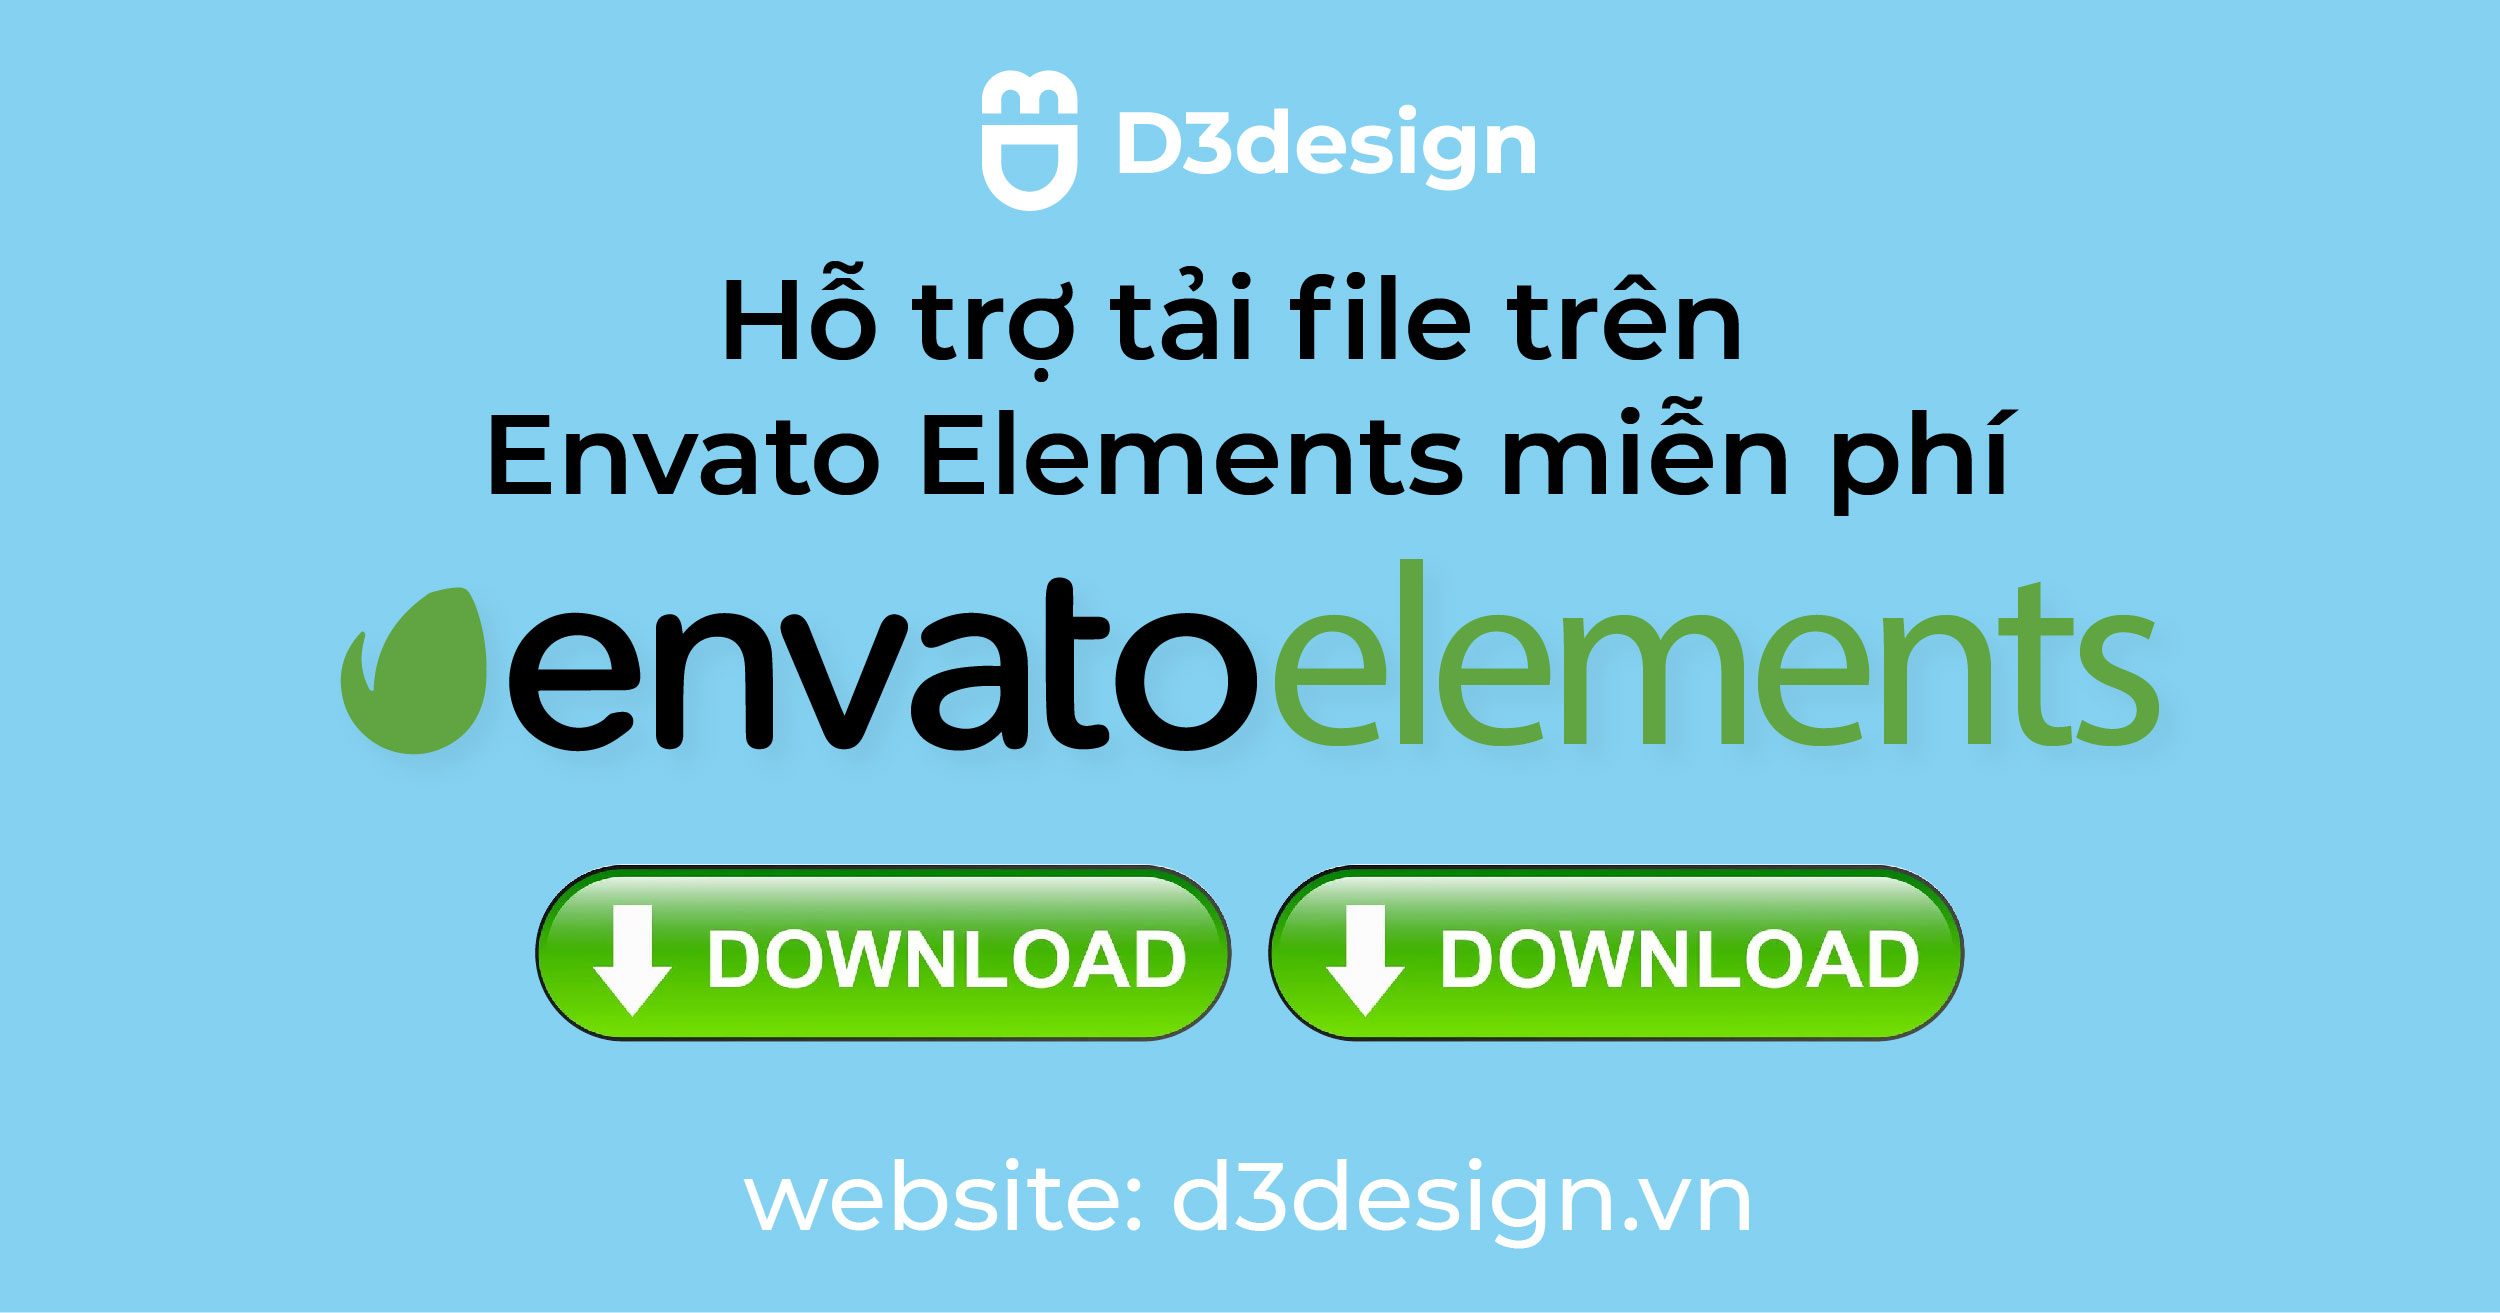 Download Envato Elements Free - Get file Envato Elements miễn phí